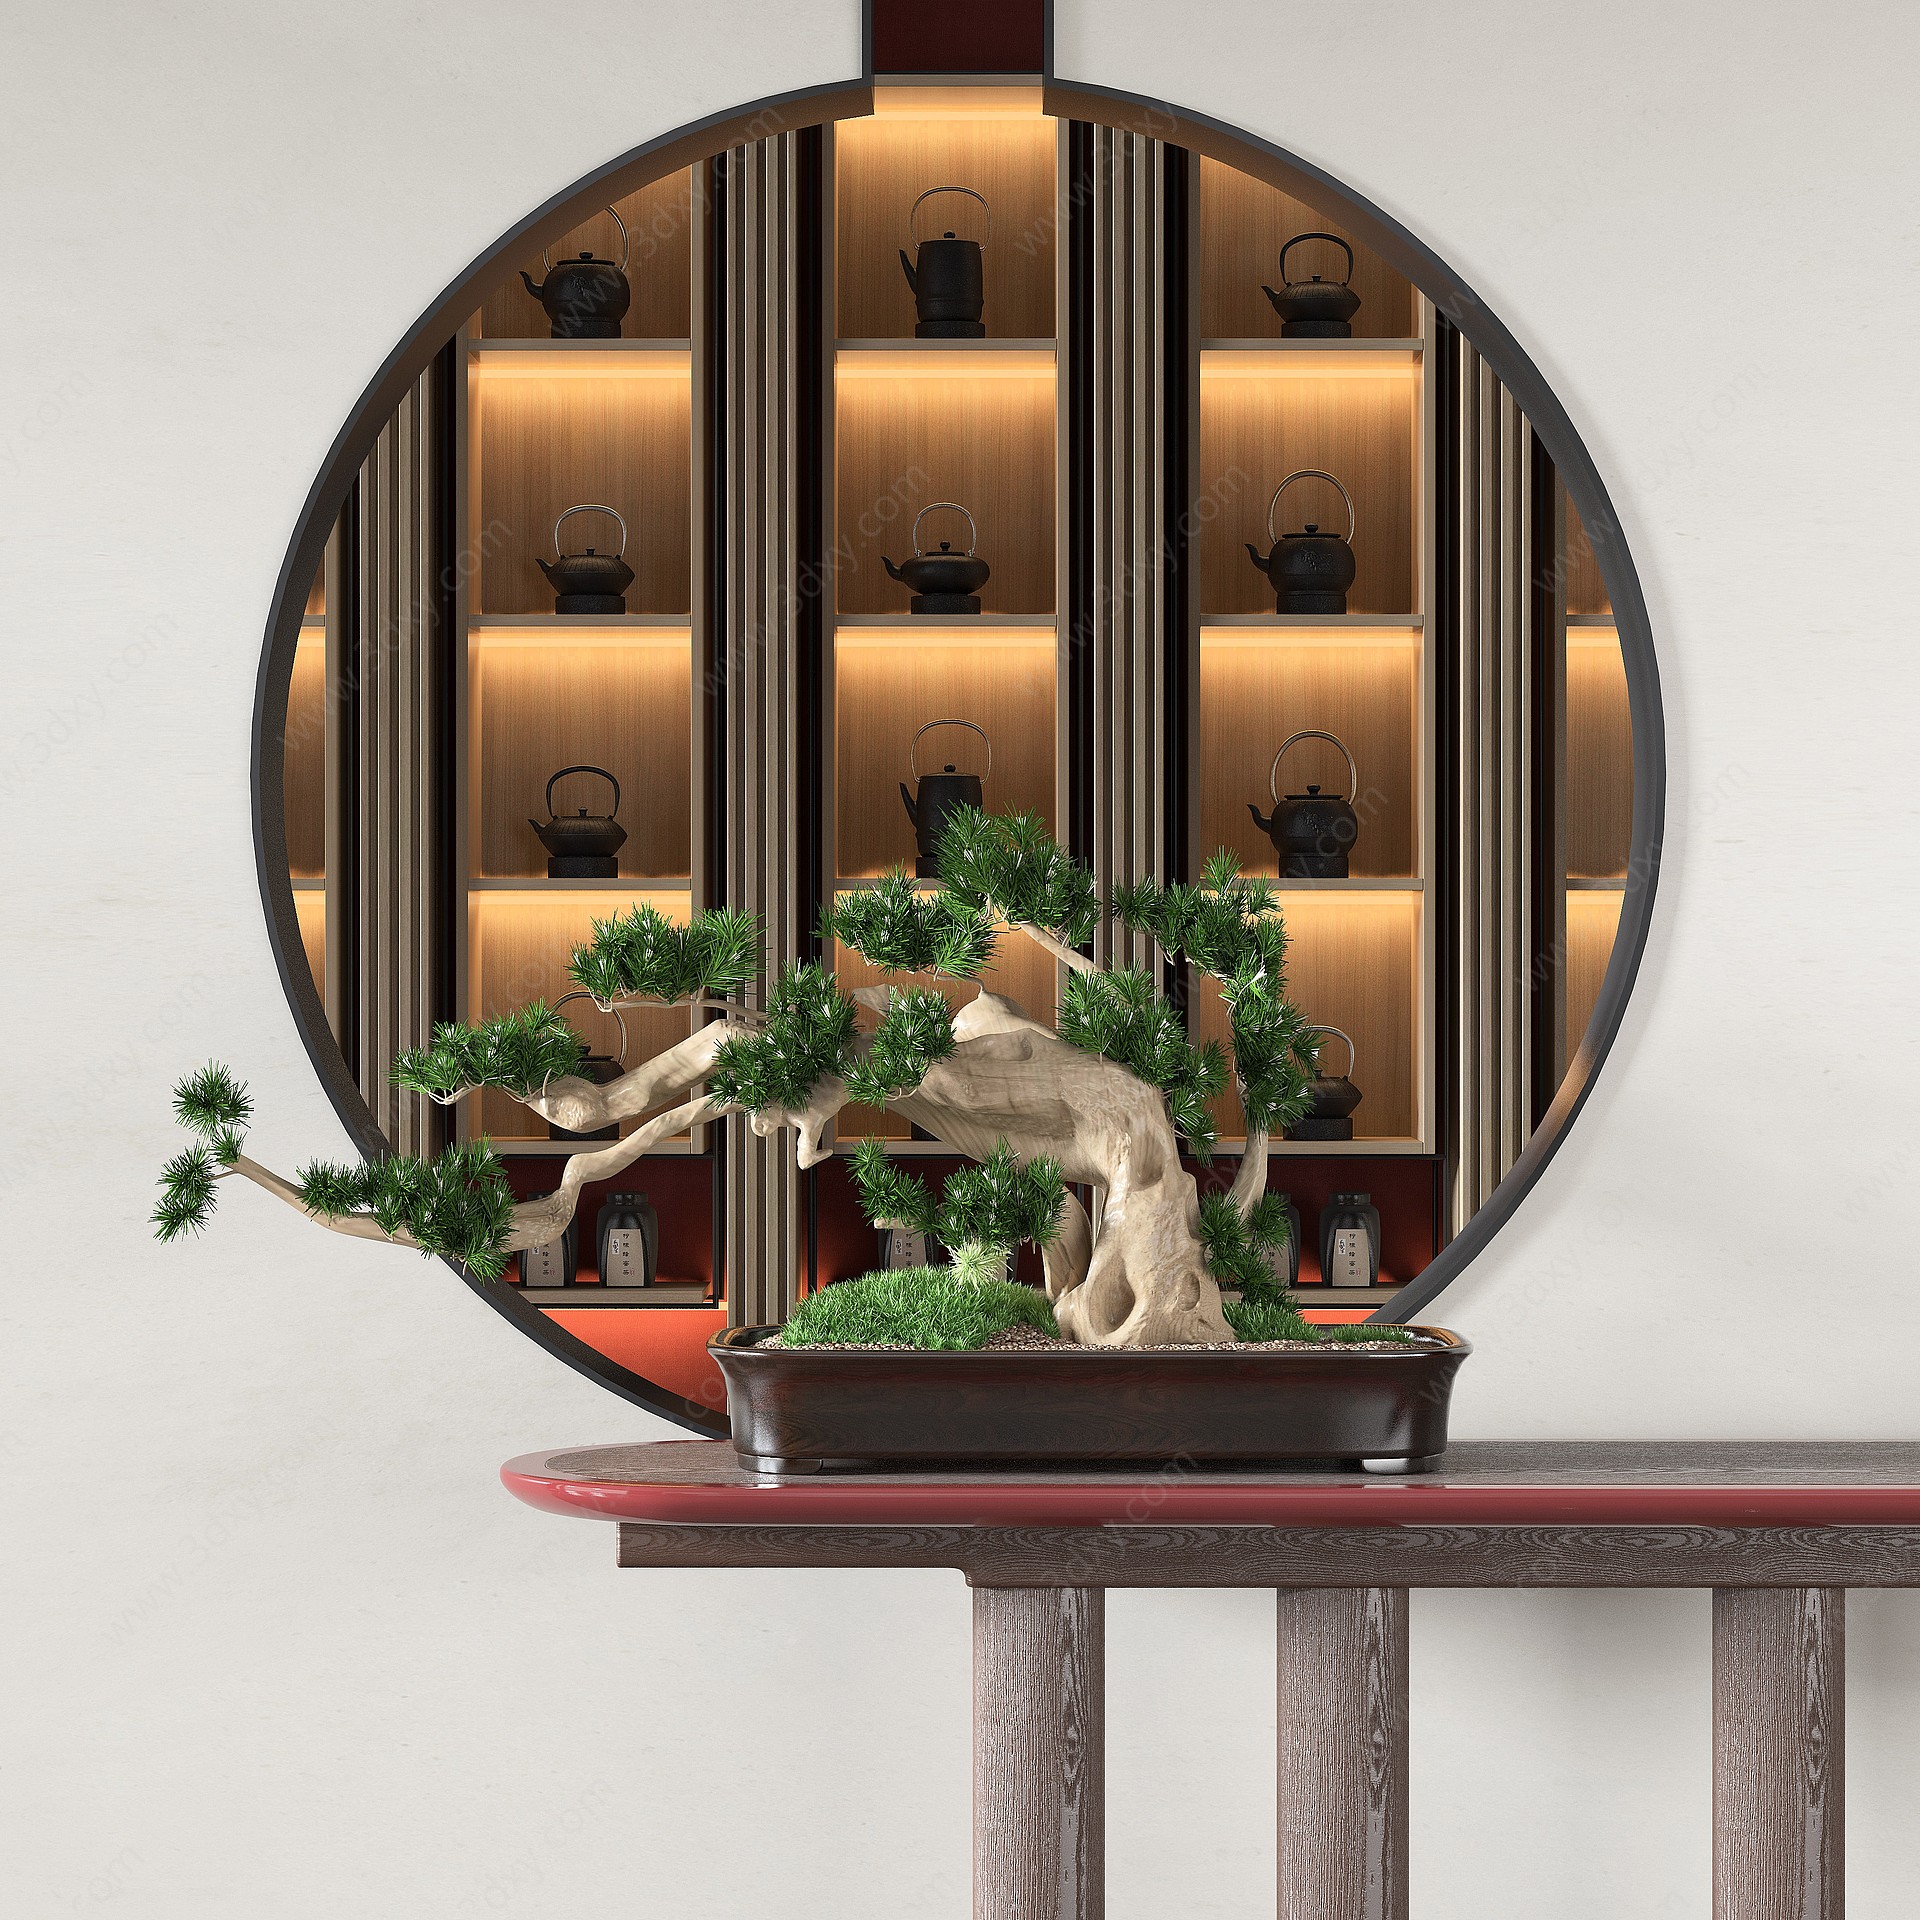 中式盆栽植物组合3D模型